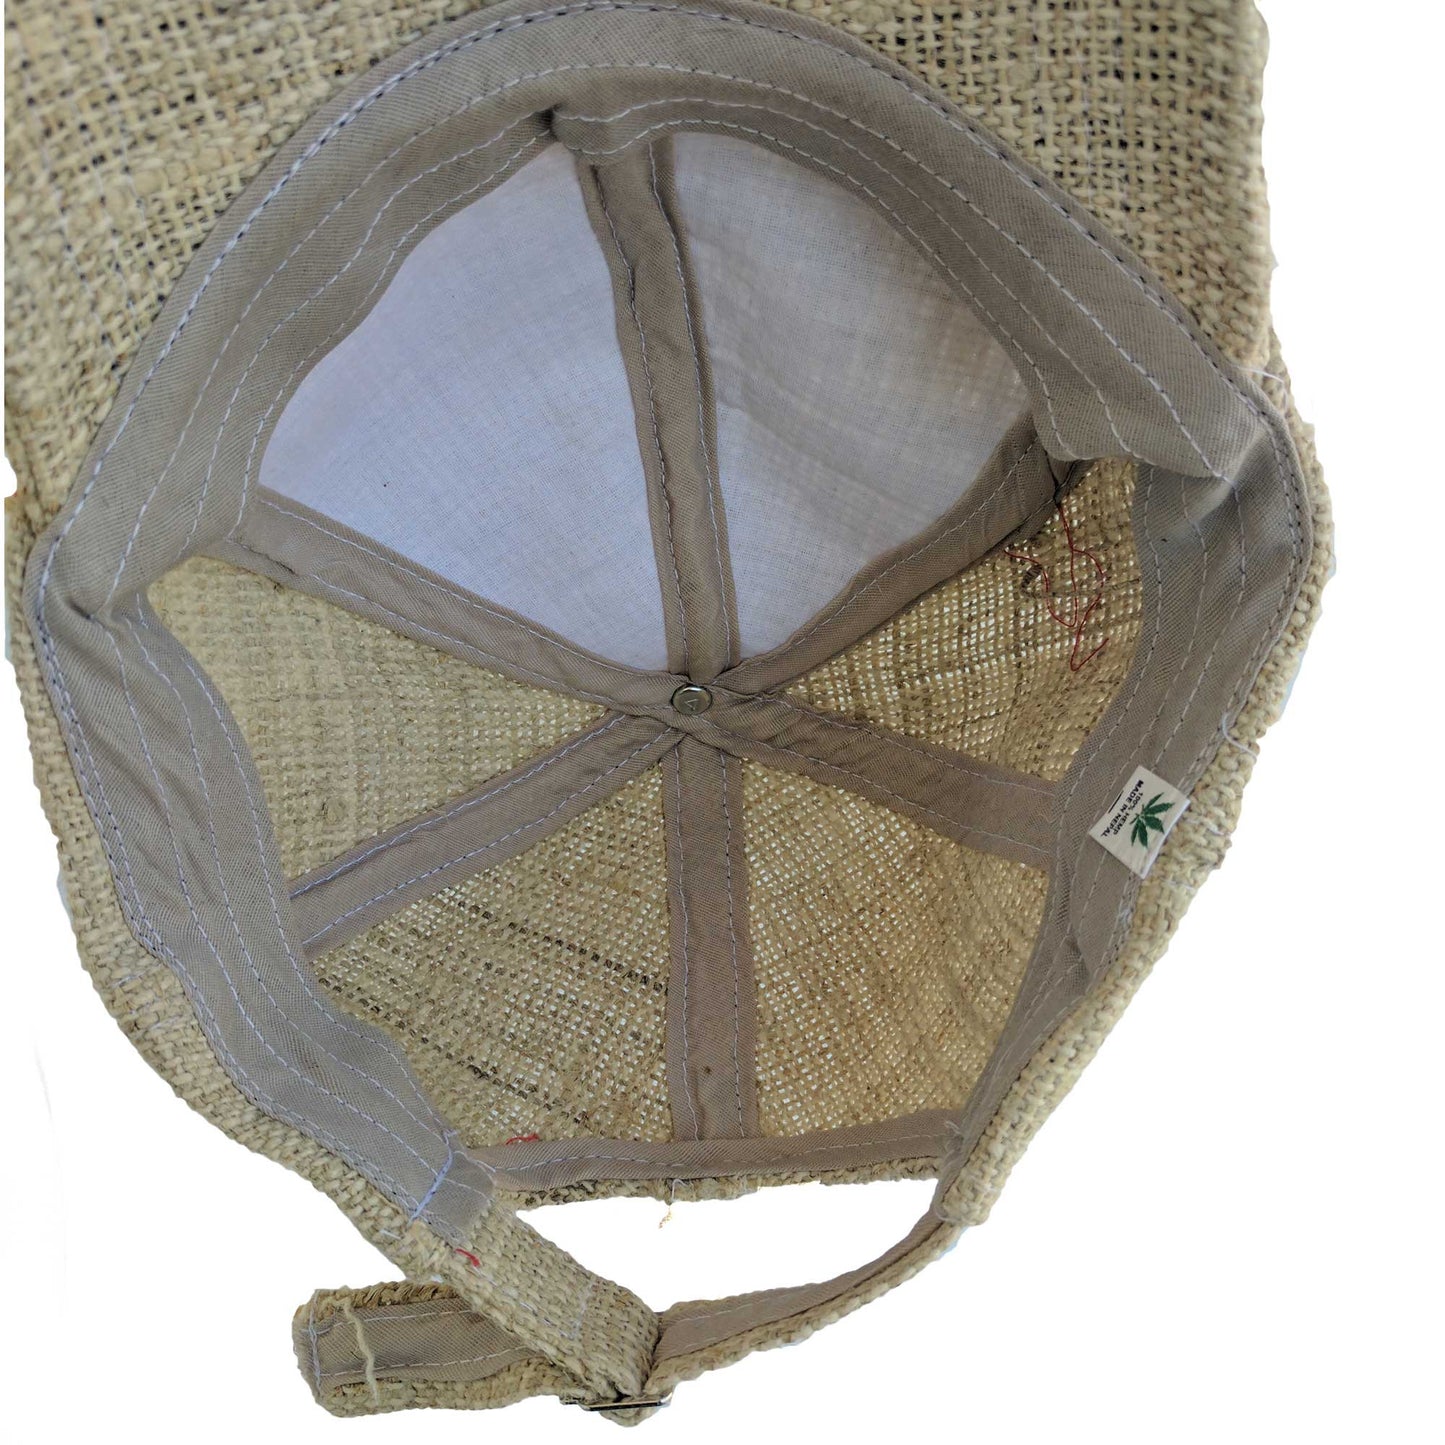 Hemp cap made from 100% pure hand-woven hemp inside look